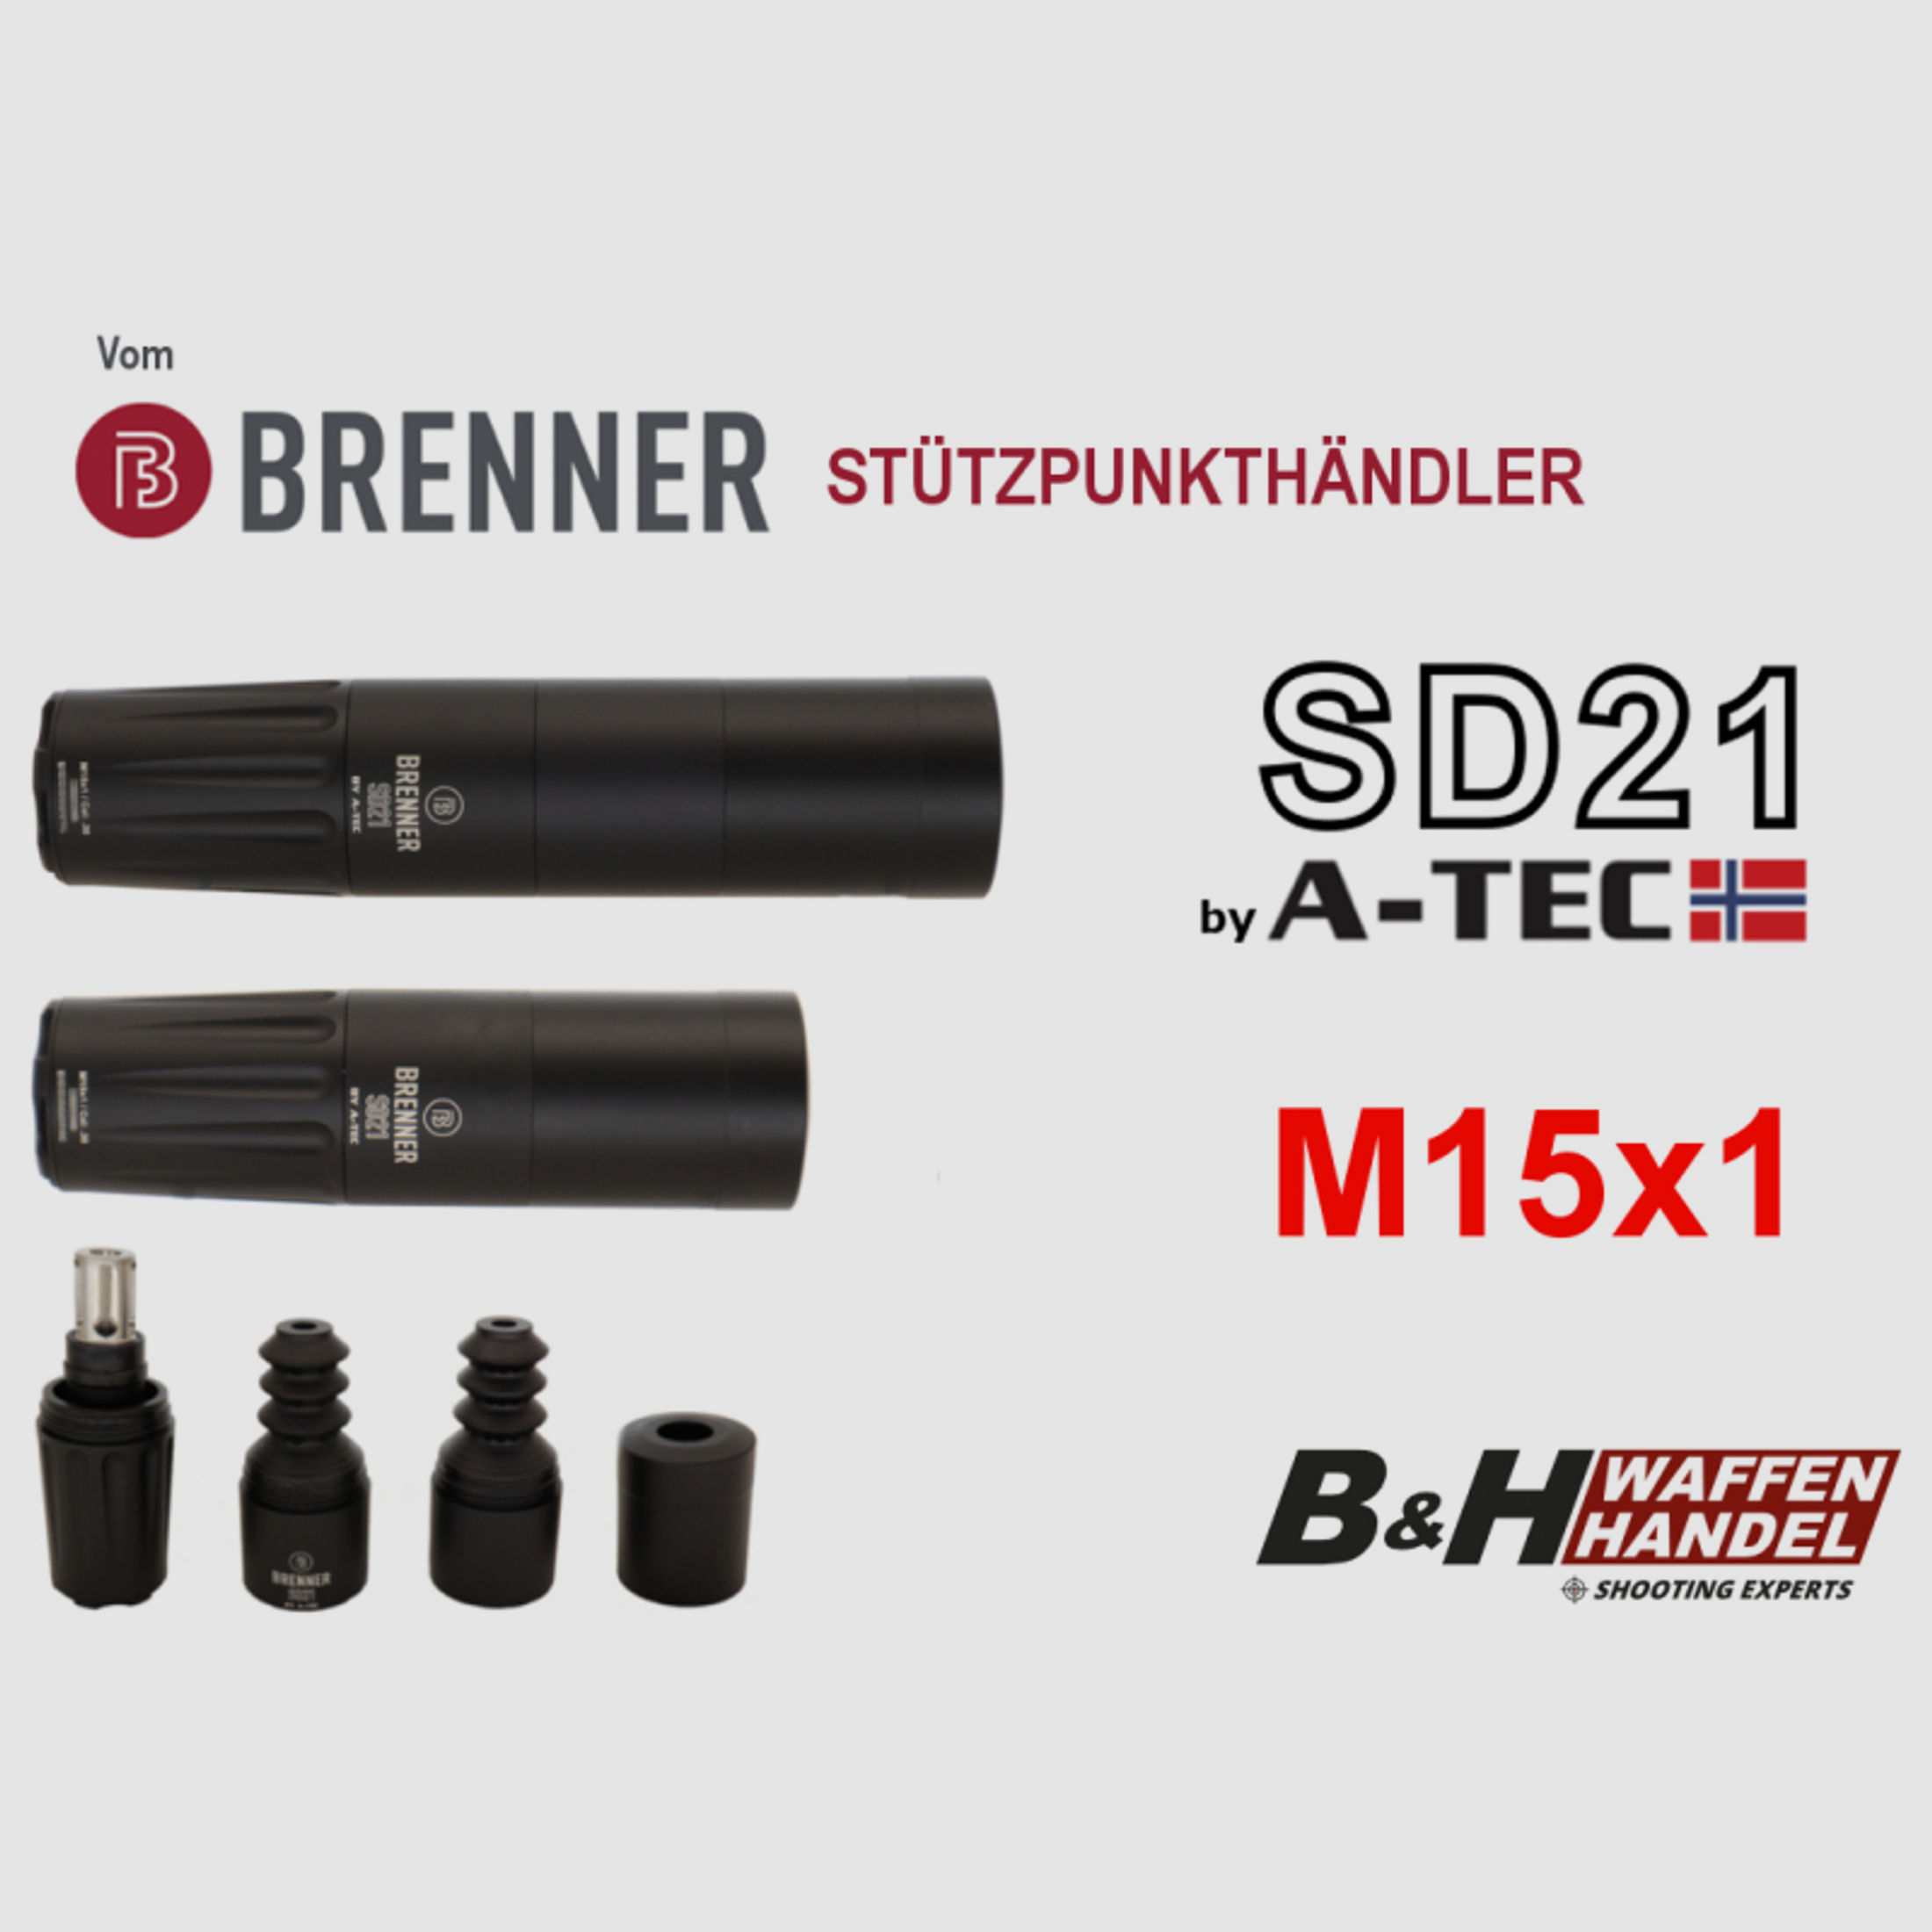 Neuware: Schalldämpfer Brenner SD21 (by A-TEC) M15x1 bis Kal.: .30 over-barrel OB SD